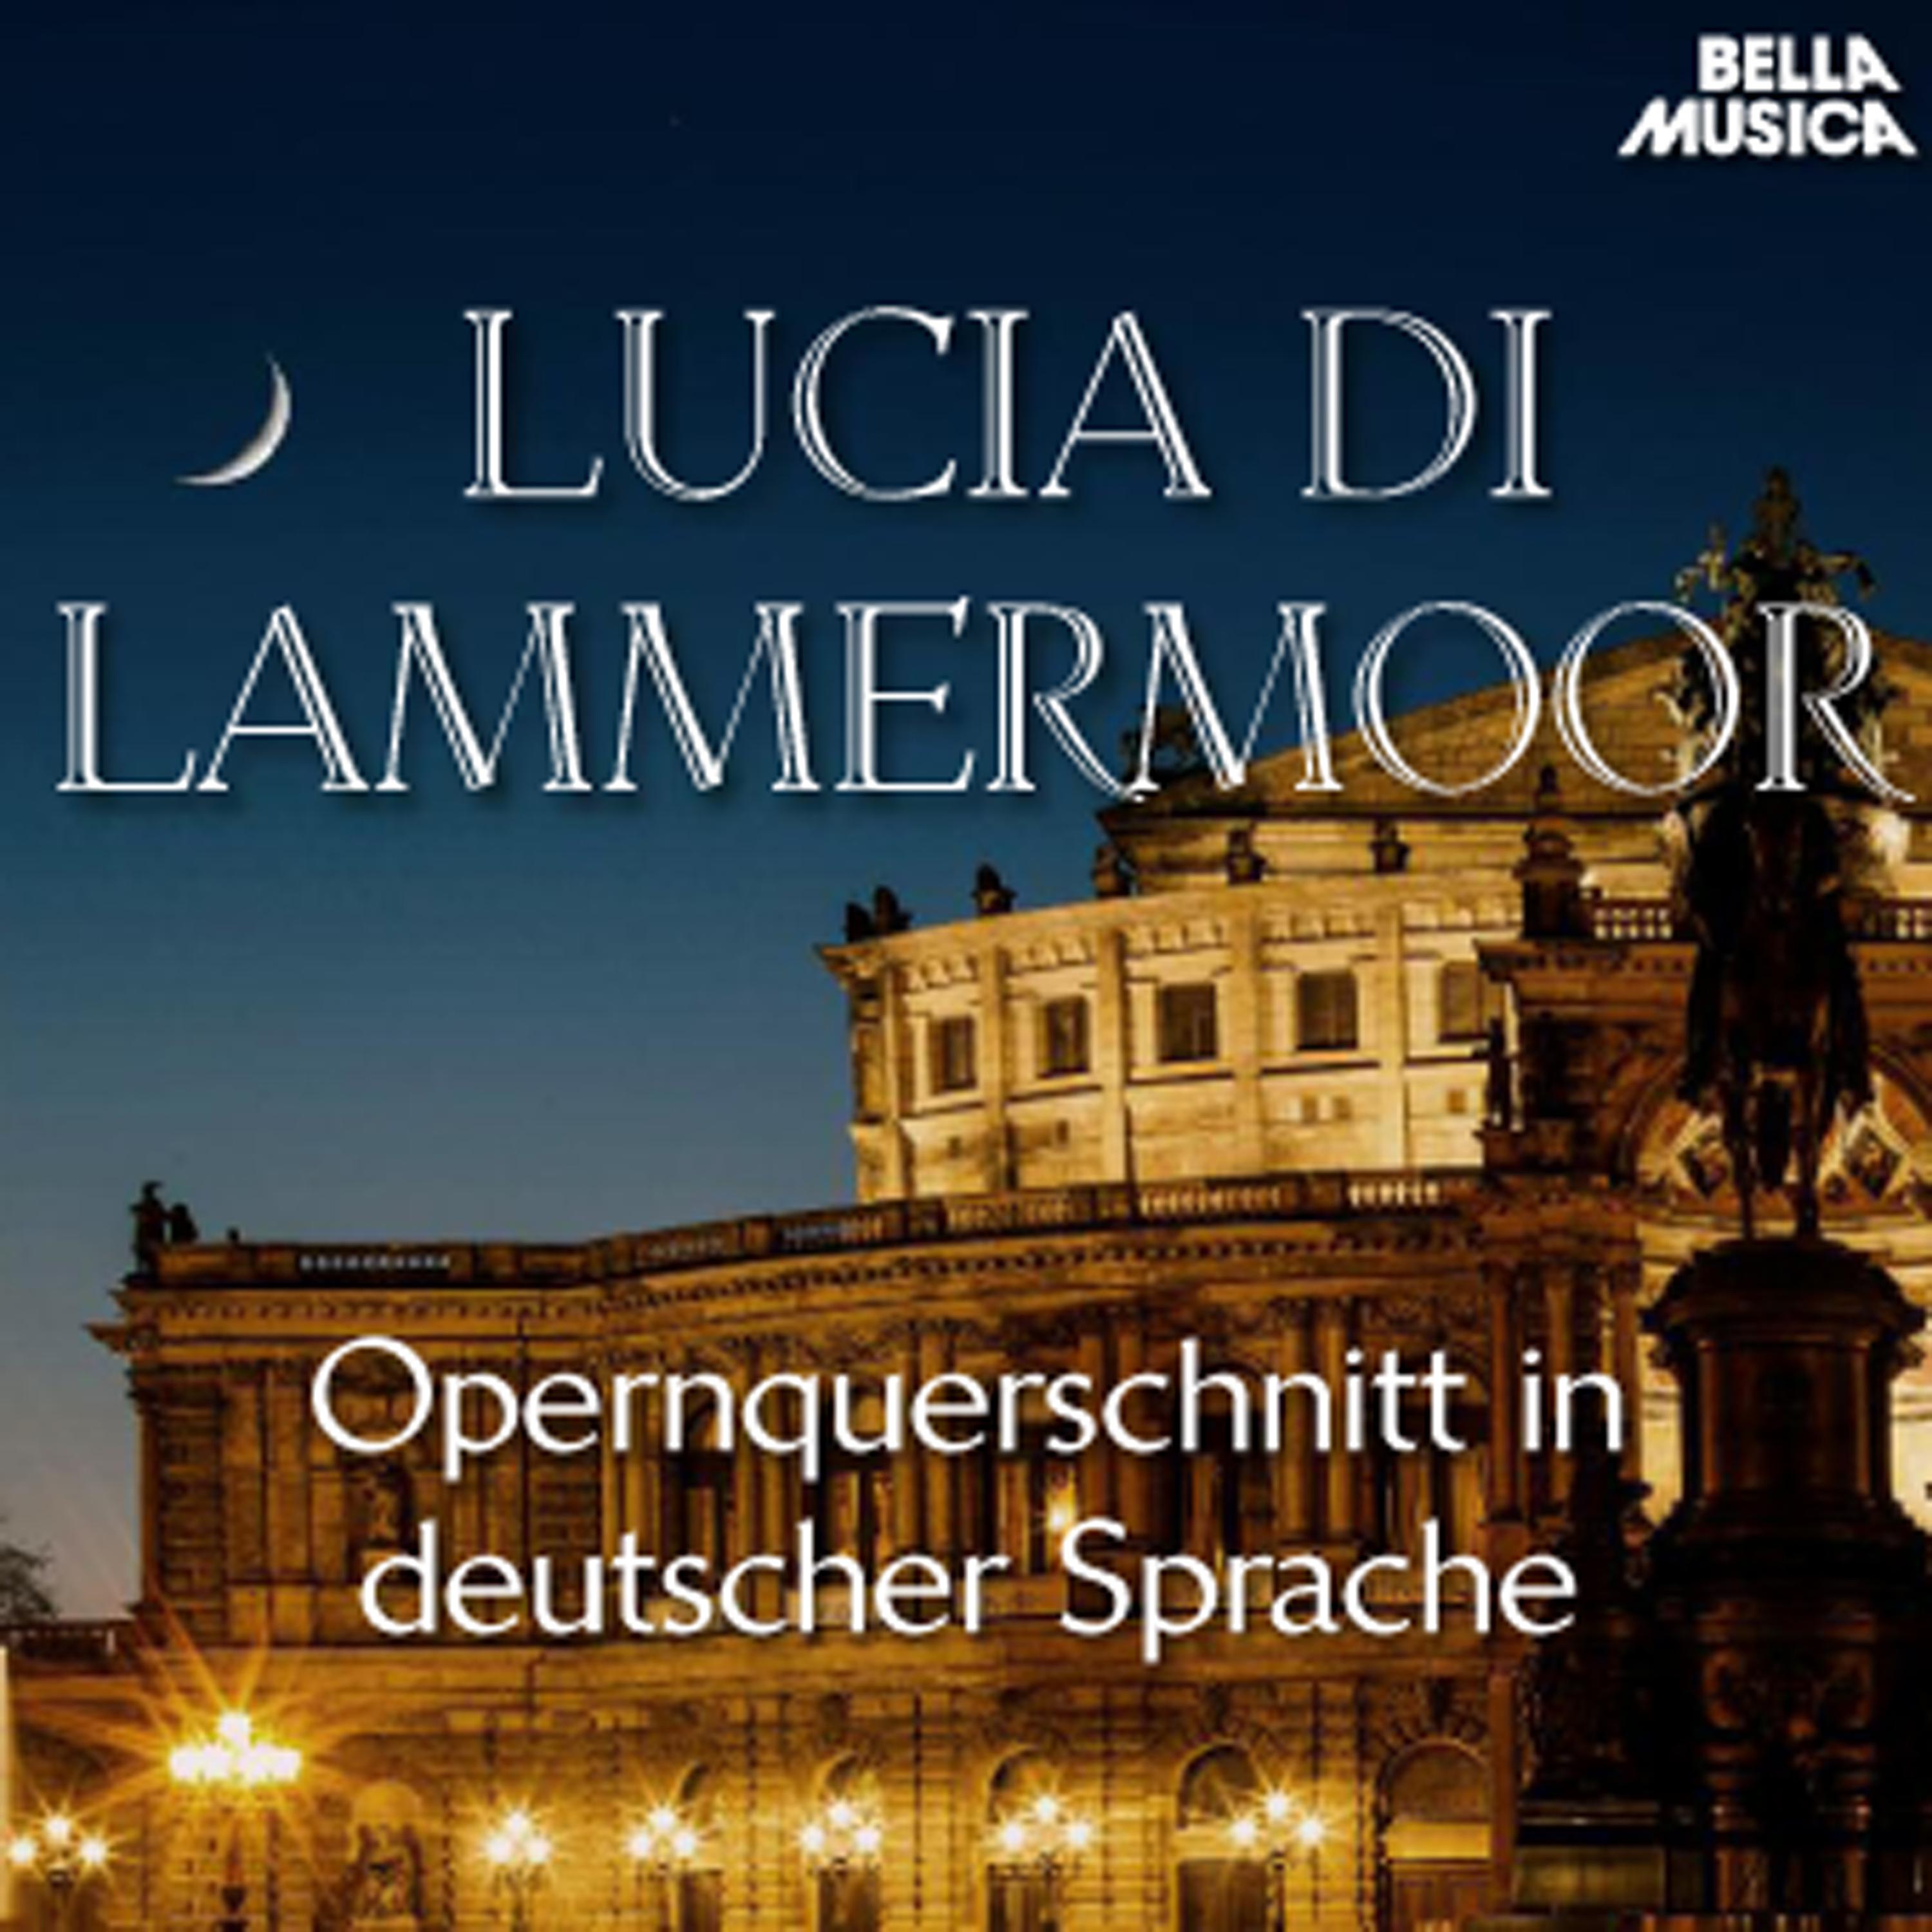 Lucia di Lammermoor: Dein Stern war nur auf kurze Zeit in Dunkelheit verschwunden